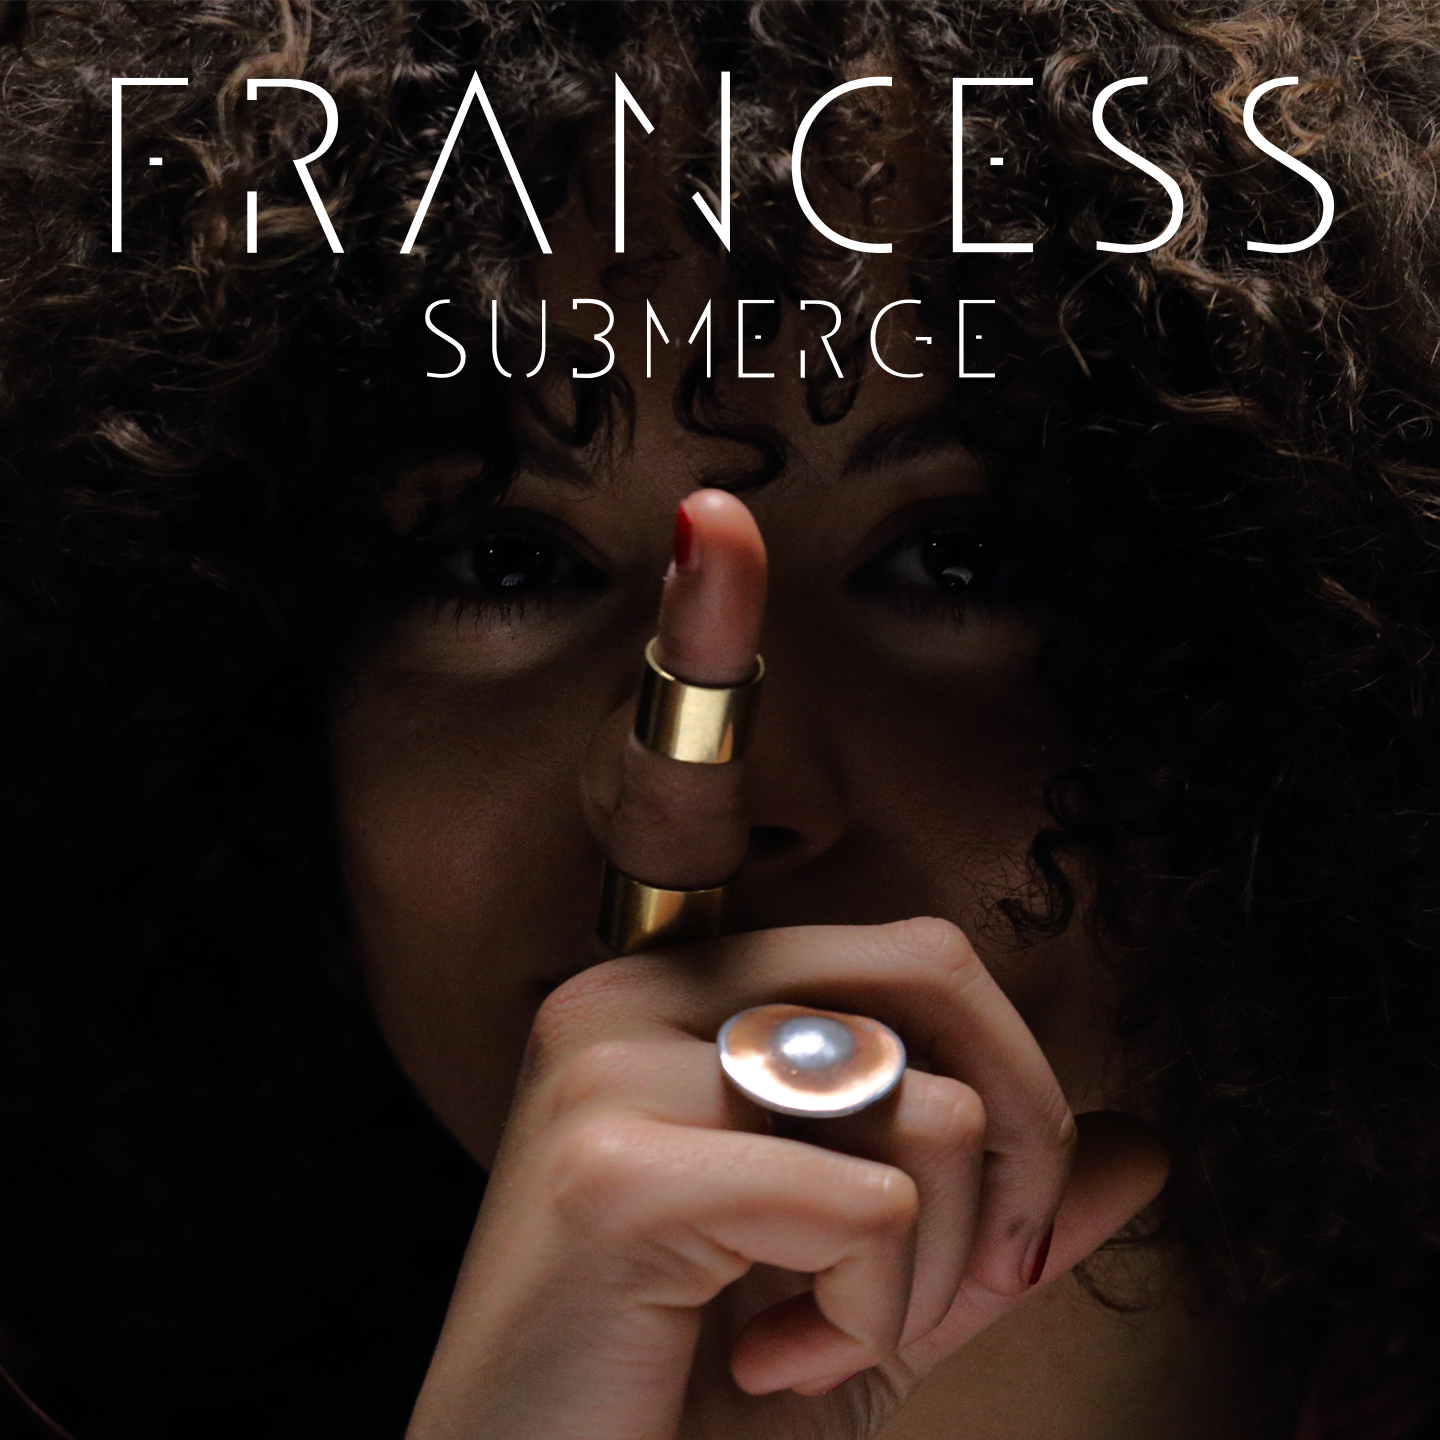  FRANCESS: “SUBMERGE” è l’album dell’artista italo-giamaicana